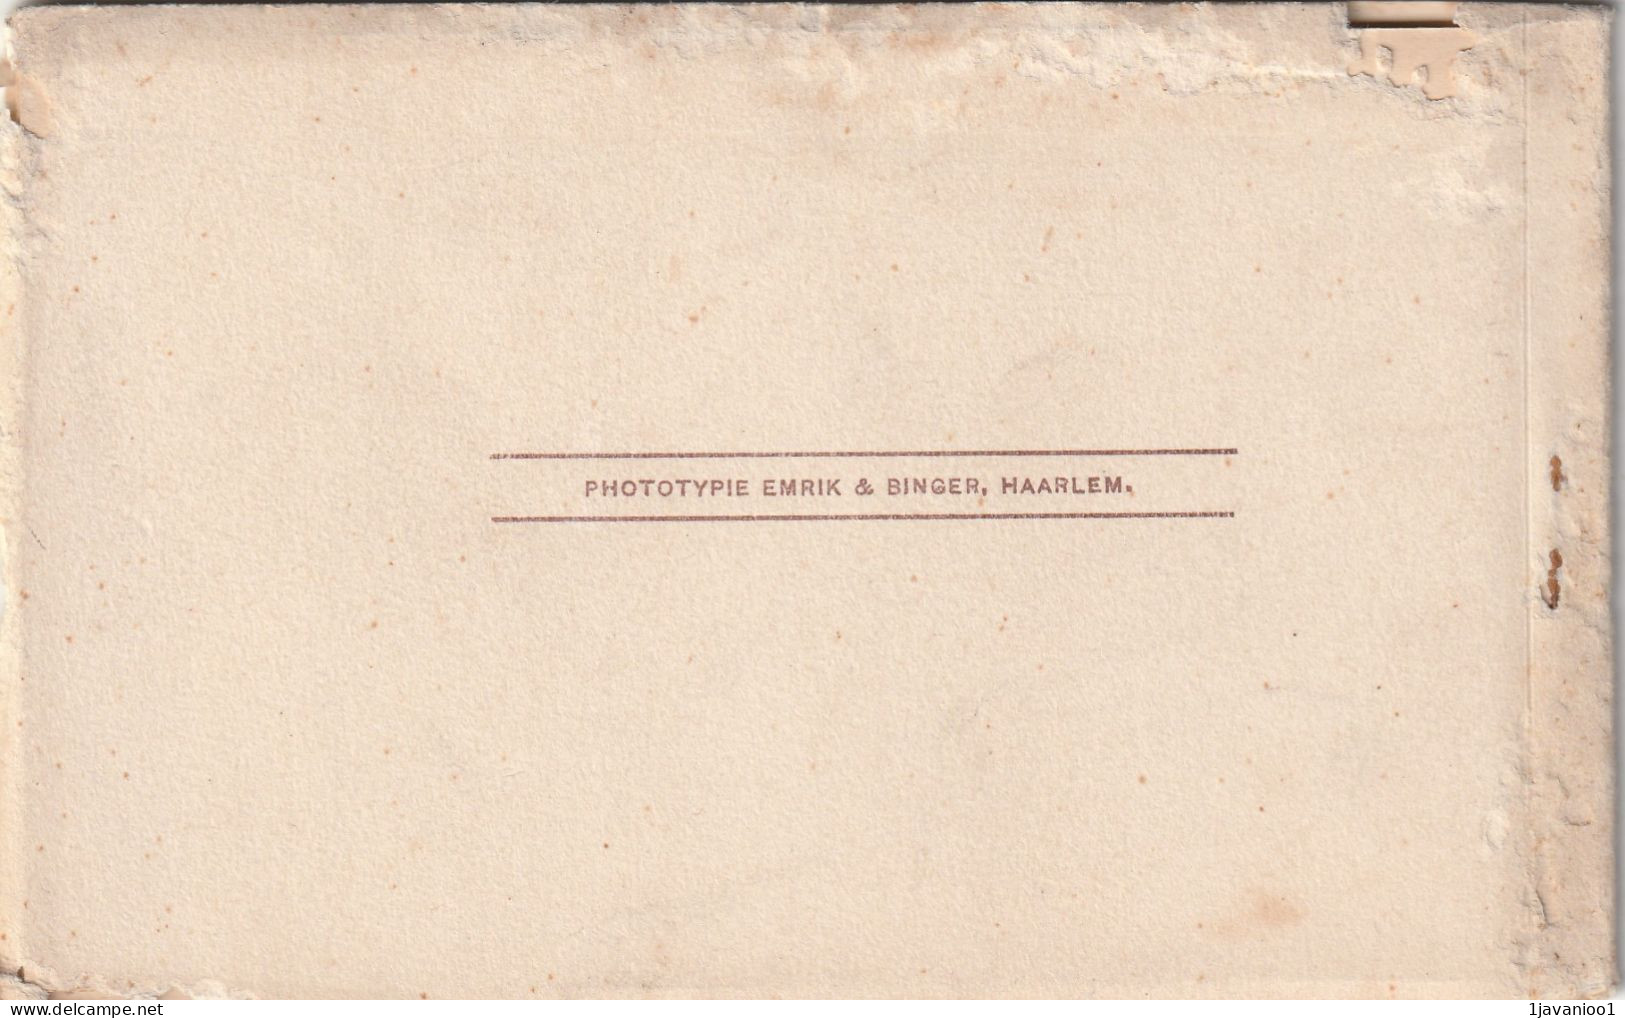 Poperinge, Pensionnat Francais, boekje met 5 postkaarte, kompleet, 7 scans